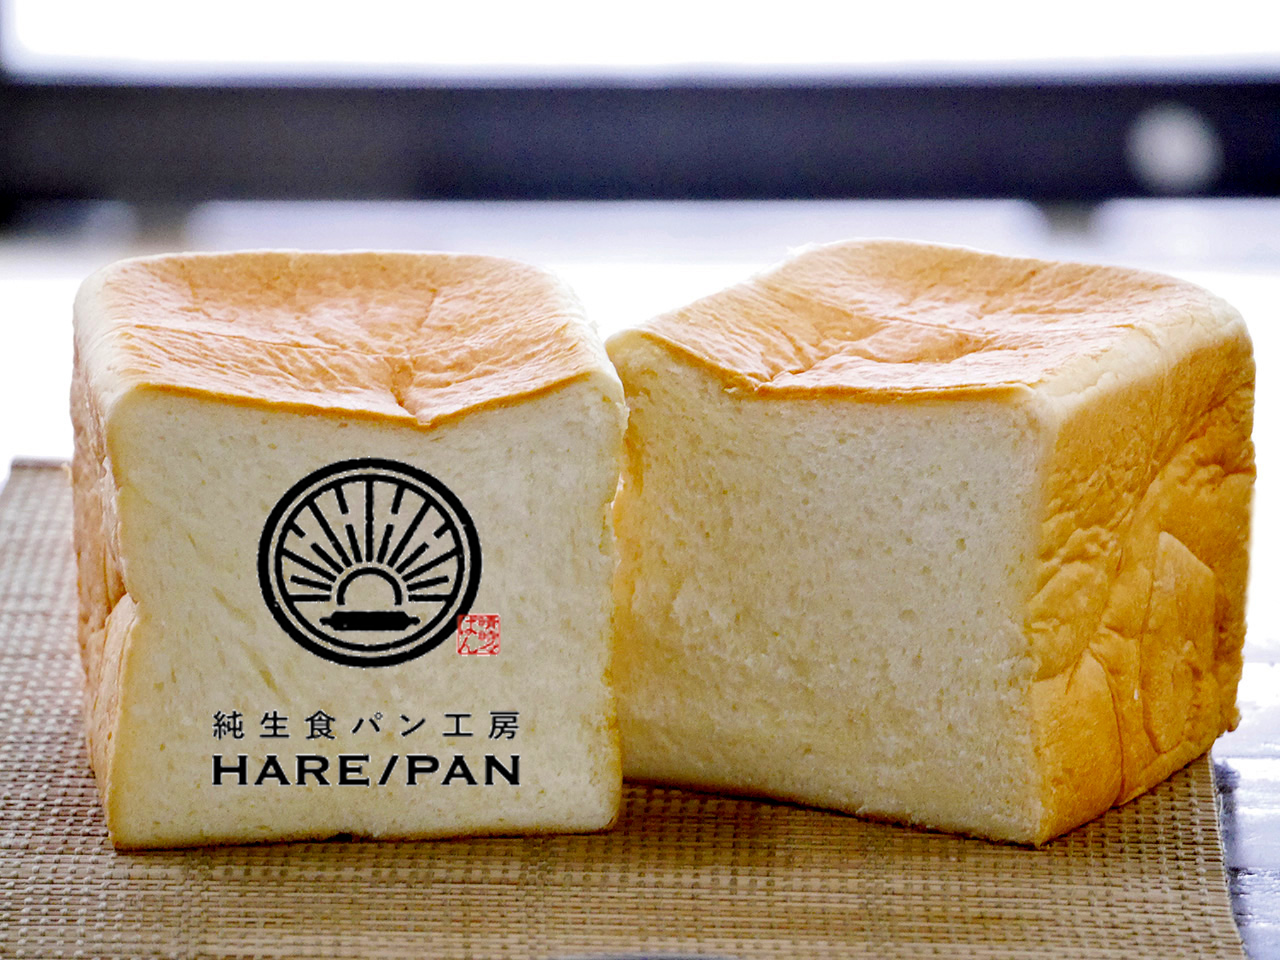 評判 ハレパン 純生食パン工房 HARE/PAN（ハレパン）を食べてみました。乃が美や高匠と比較もします。